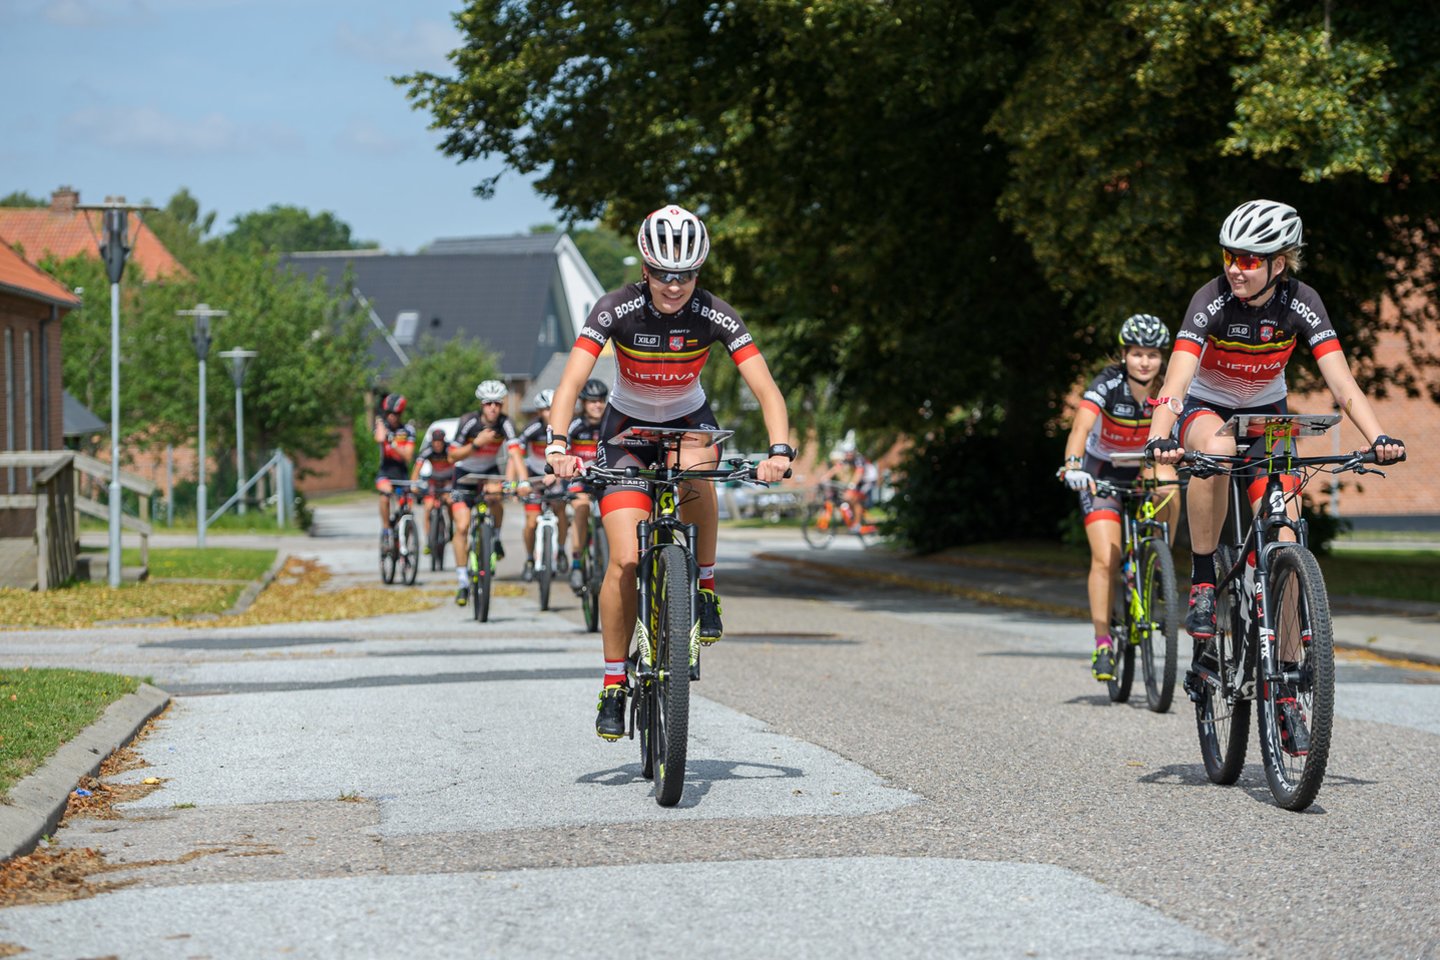  Lietuvos orientacinio sporto atstovai pradeda kovas pasaulio kalnų dviračių čempionate <br> orienteering.lt nuotr.